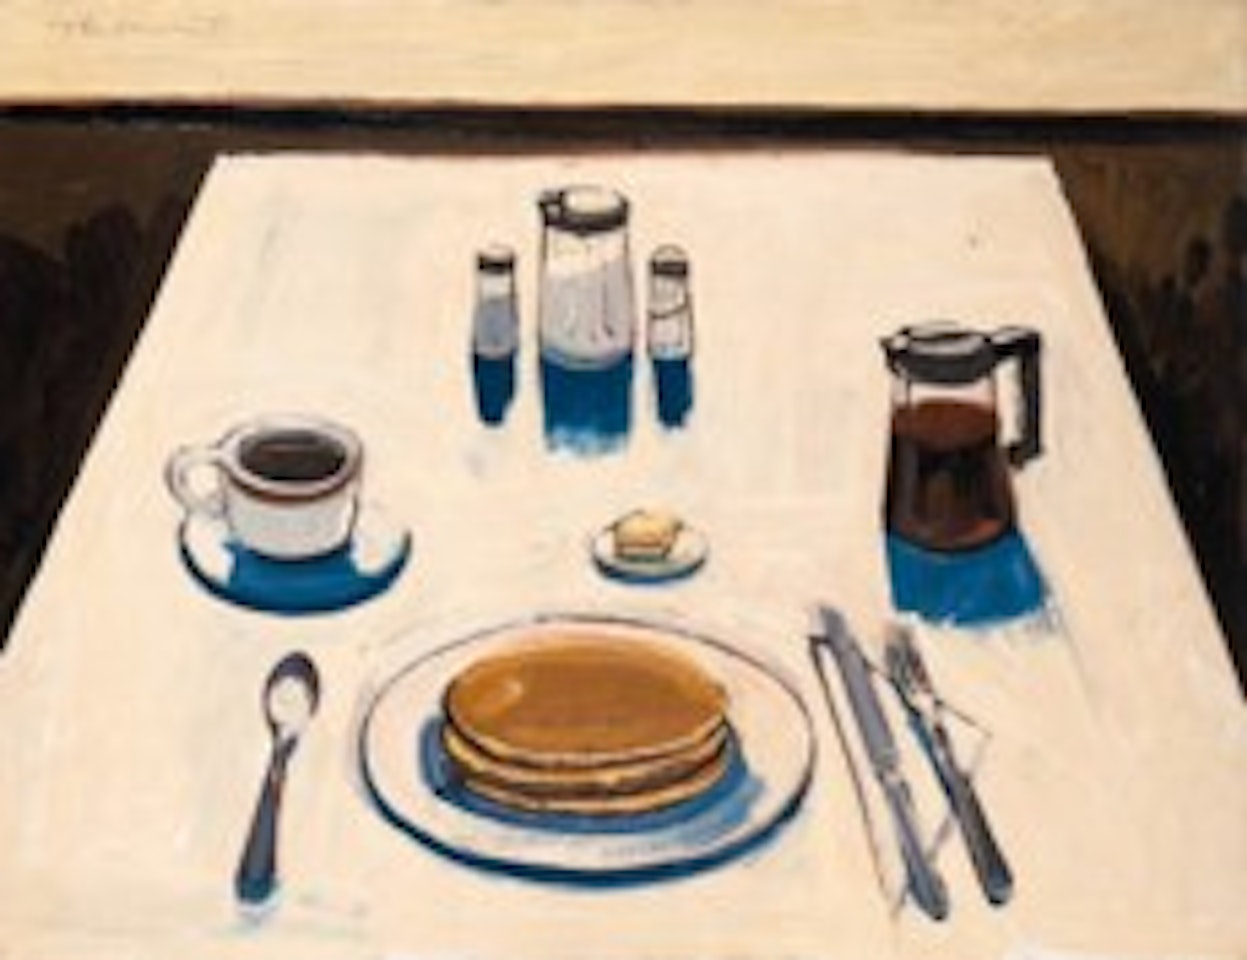 Pancakes by Wayne Thiebaud